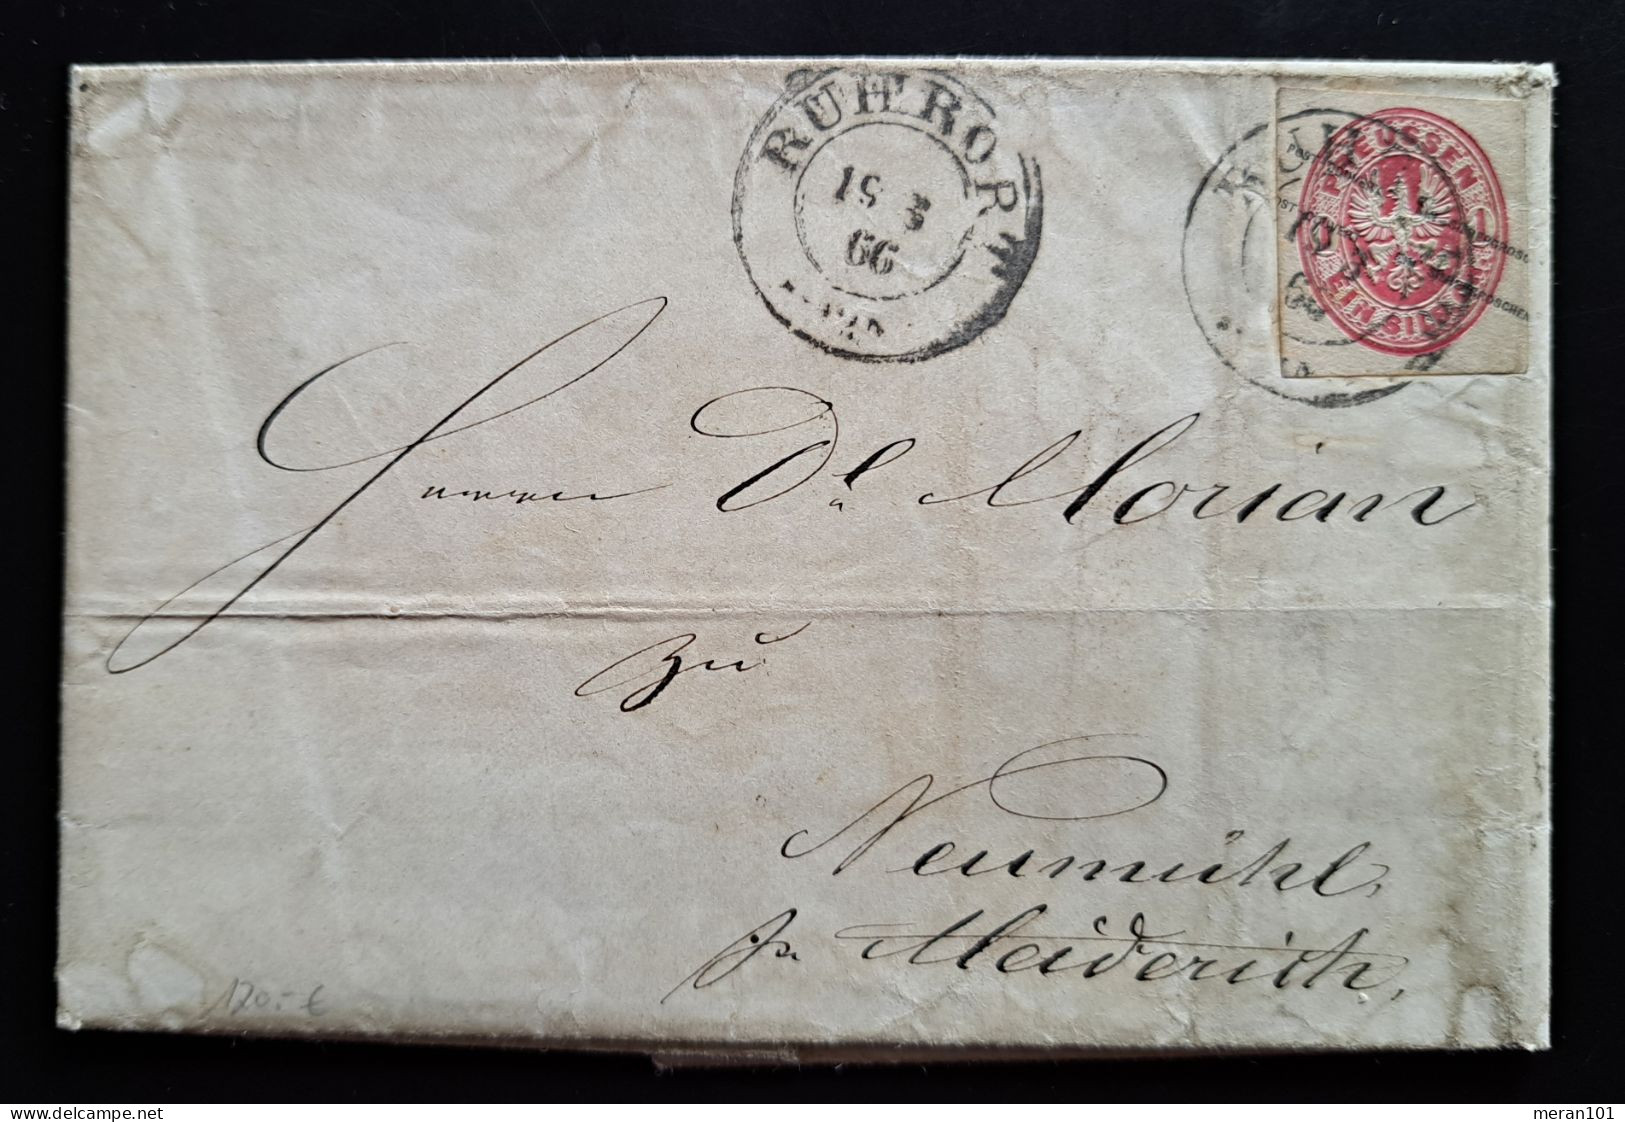 Preussen 1866, Brief Mit Inhalt ROHRORT, Ganzsachenausschnitt GAA15 - Storia Postale